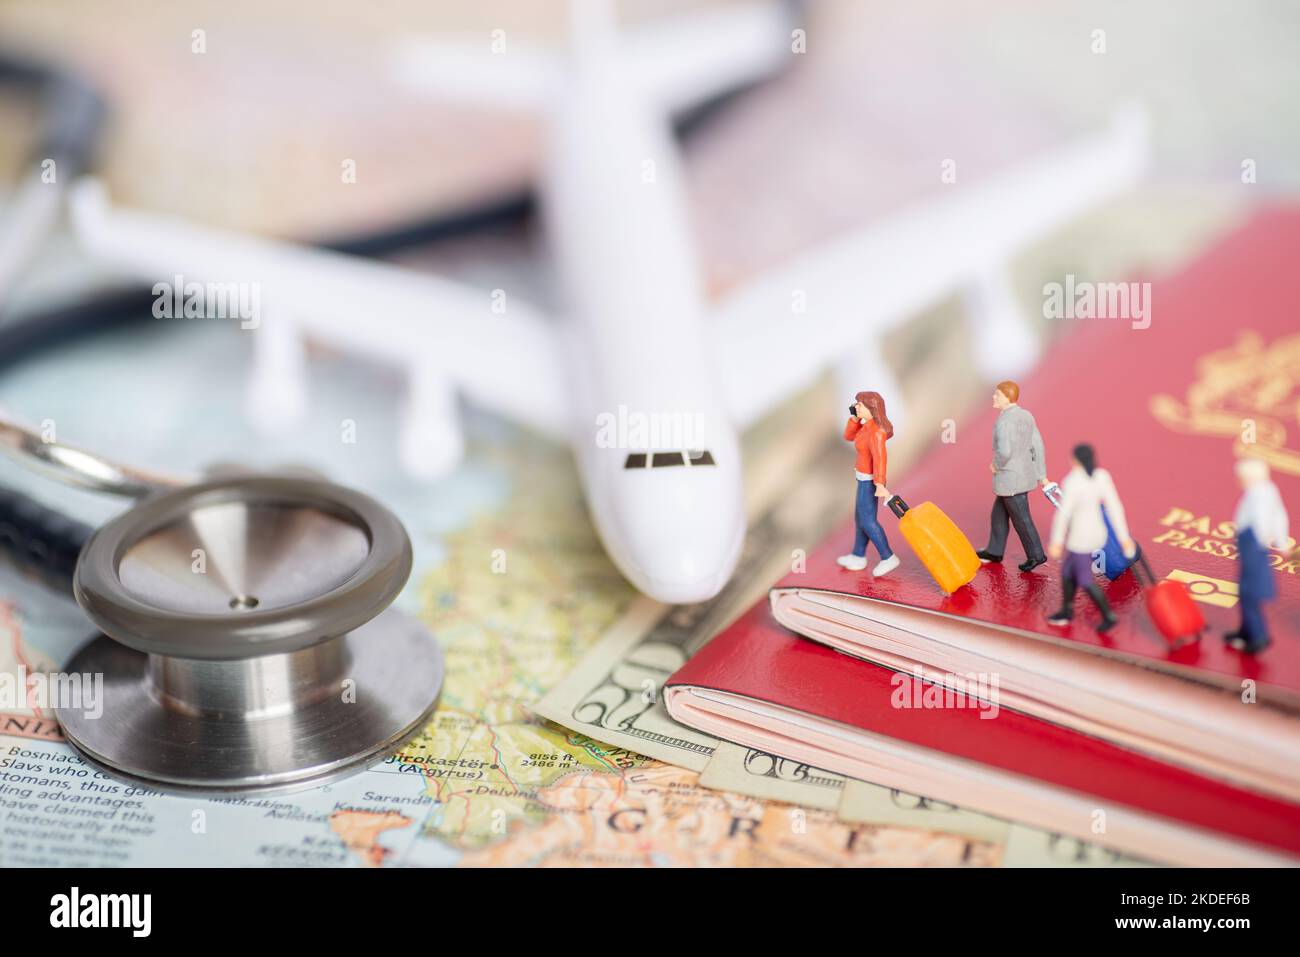 Miniaturpassagierkonzept von Menschen, die ins Ausland reisen - Versicherung oder Medizintourismus-Konzept. Stockfoto